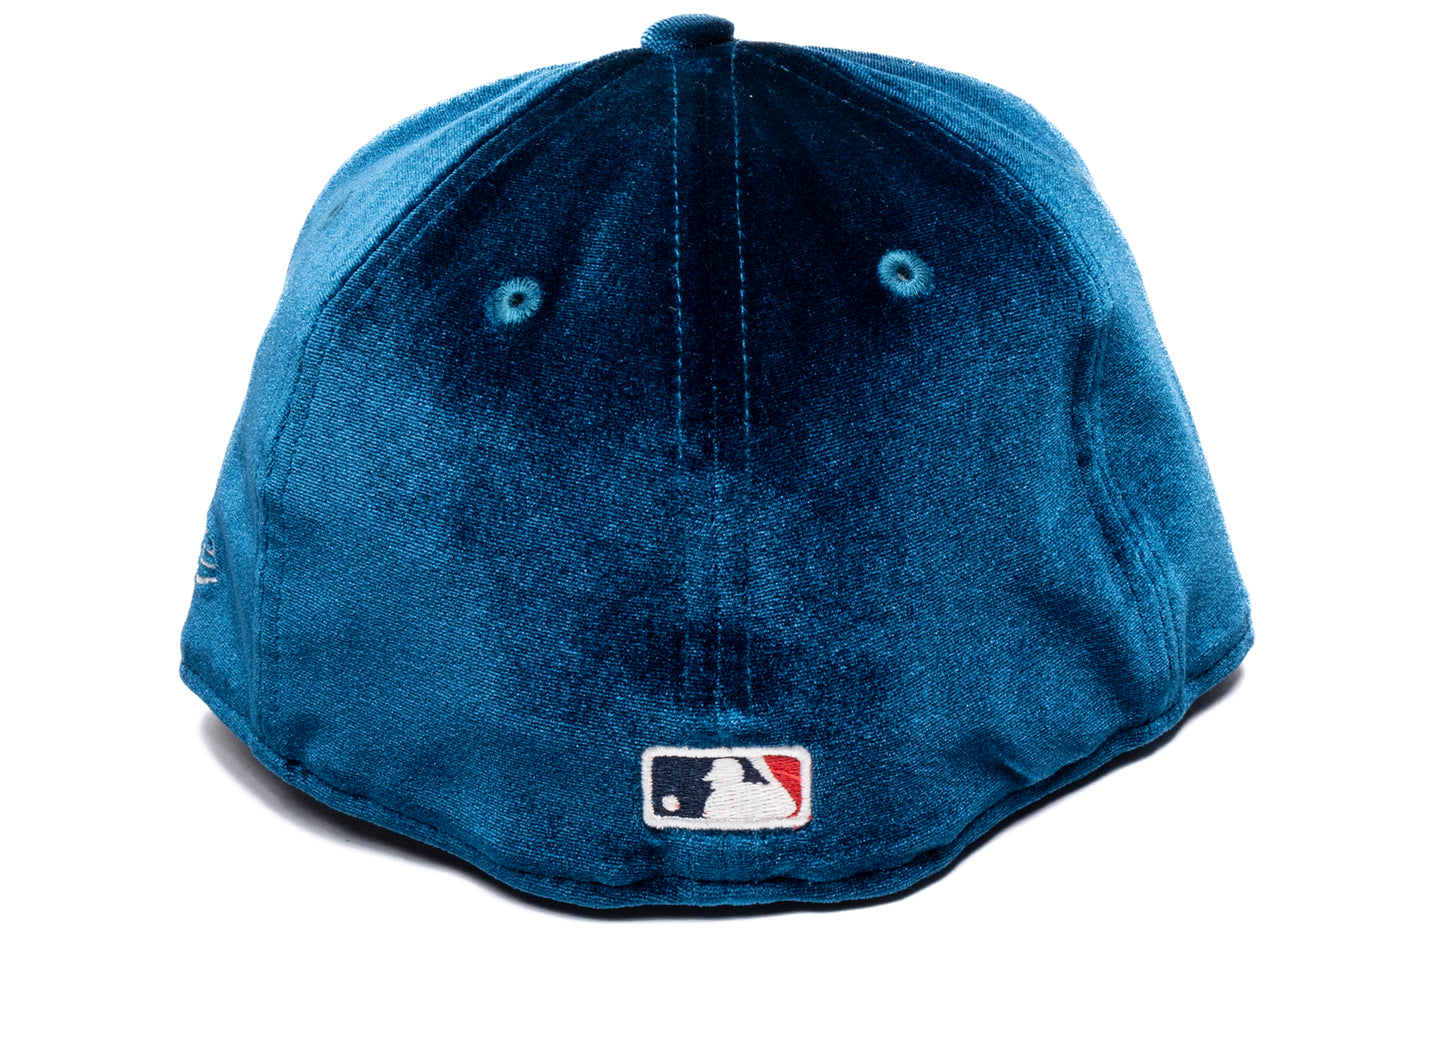 New Era Atlanta Braves Velvet Hat w/ Visor Clip